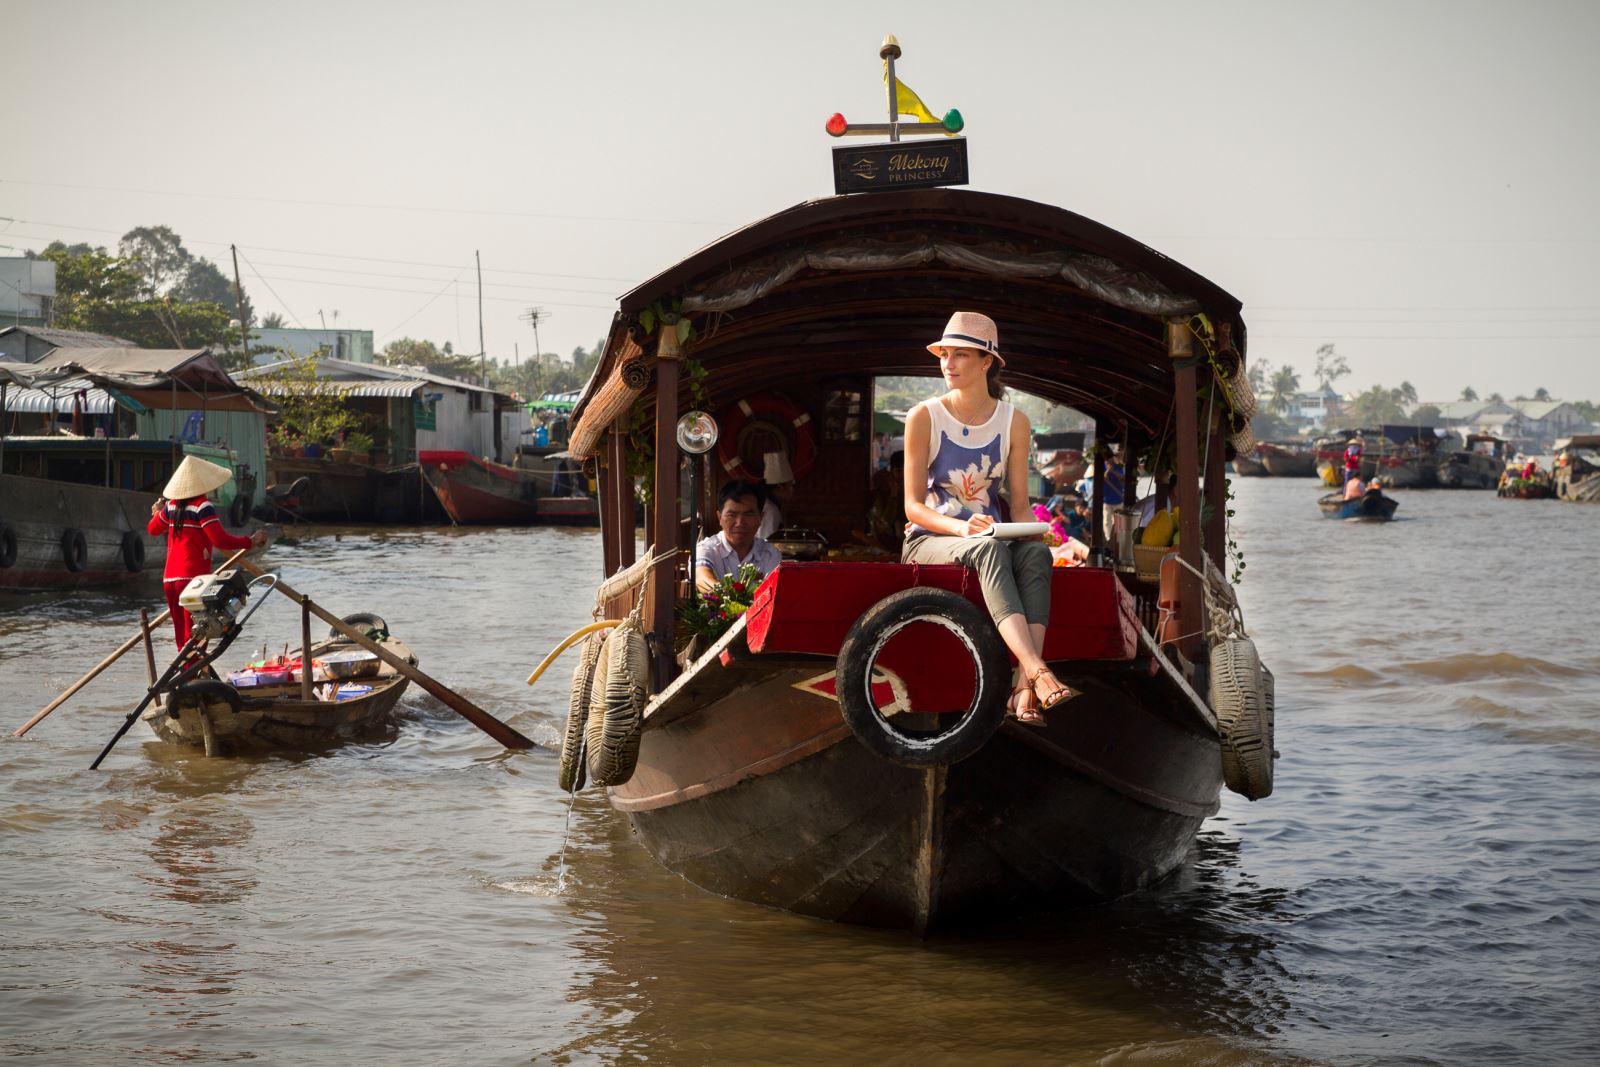 Mekong Tours 8 days